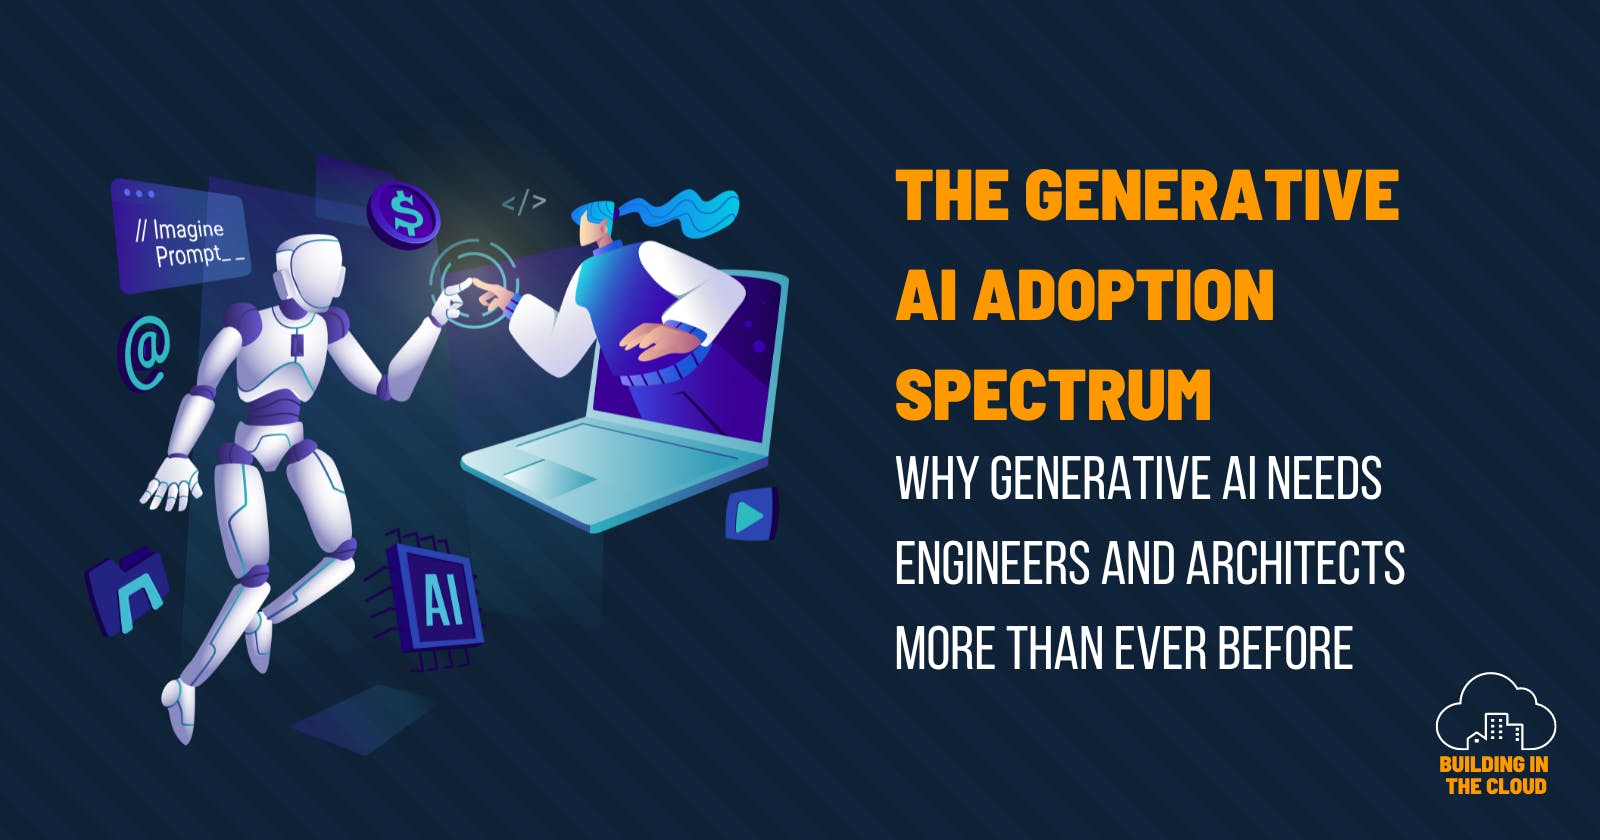 The generative AI adoption spectrum